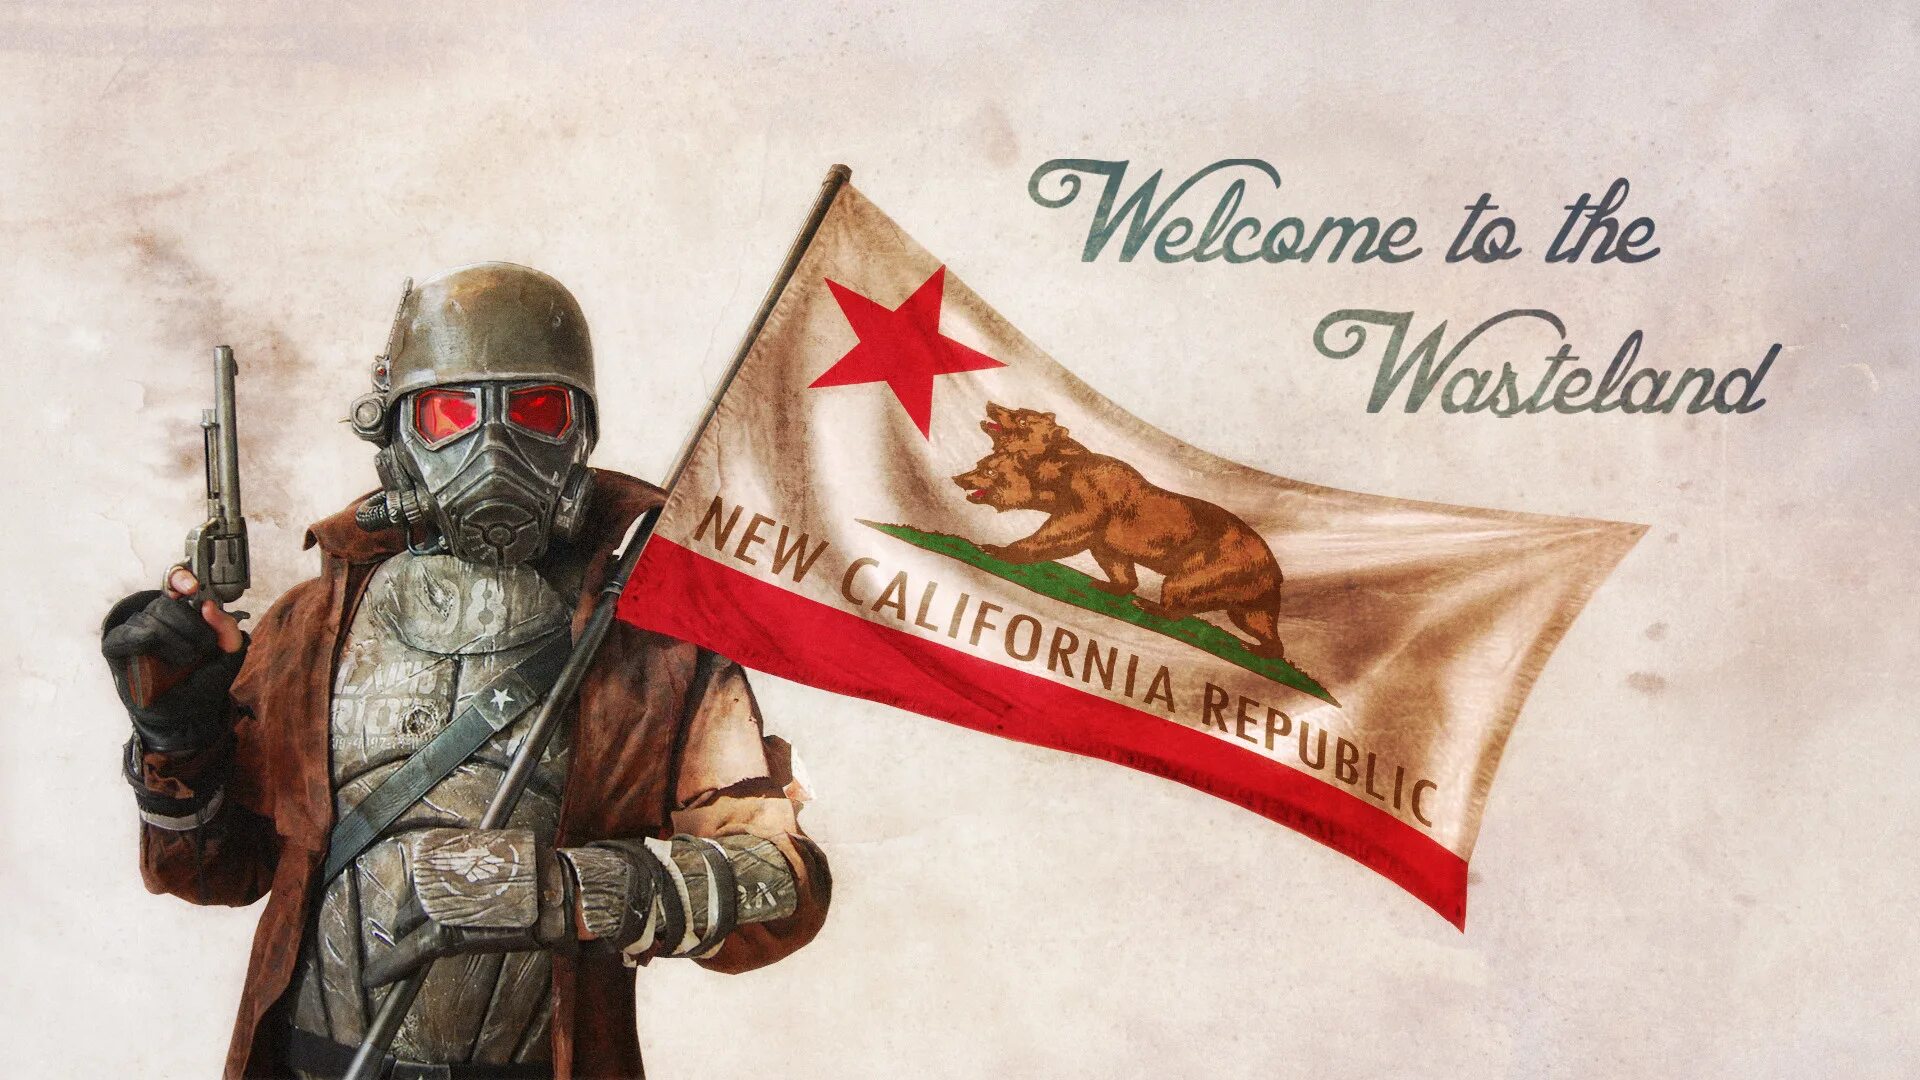 Новая калифорнийская республика fallout. Фоллаут новая Калифорния флаг. Новая Калифорнийская Республика Fallout флаг. Рейнджер НКР. Флаг НКР В Fallout New Vegas.